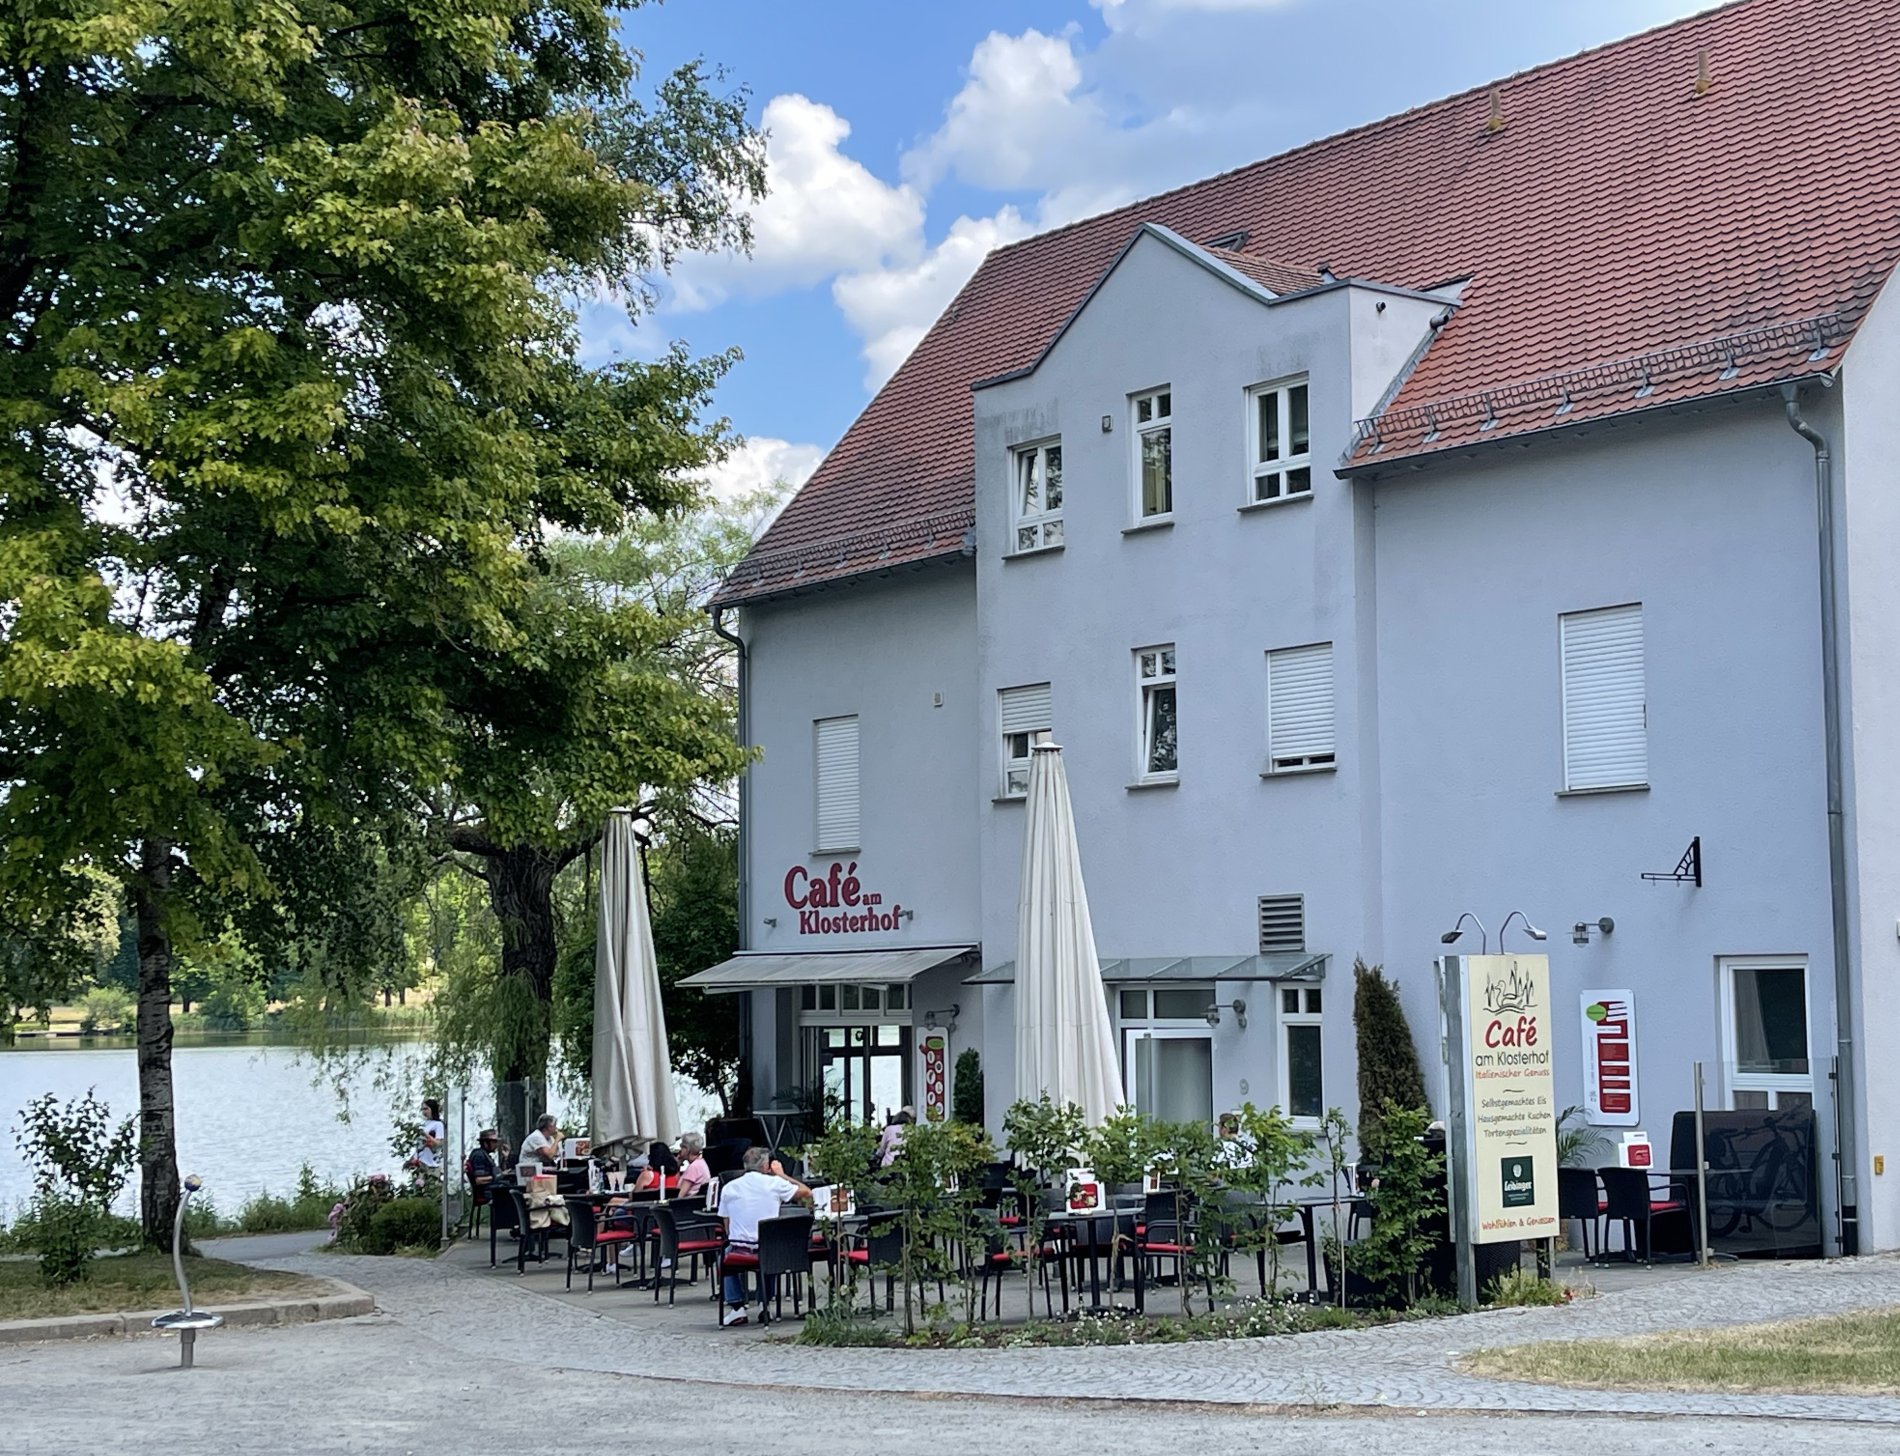 Aussenansicht des Cafe im Klosterhof mit Terrasse.